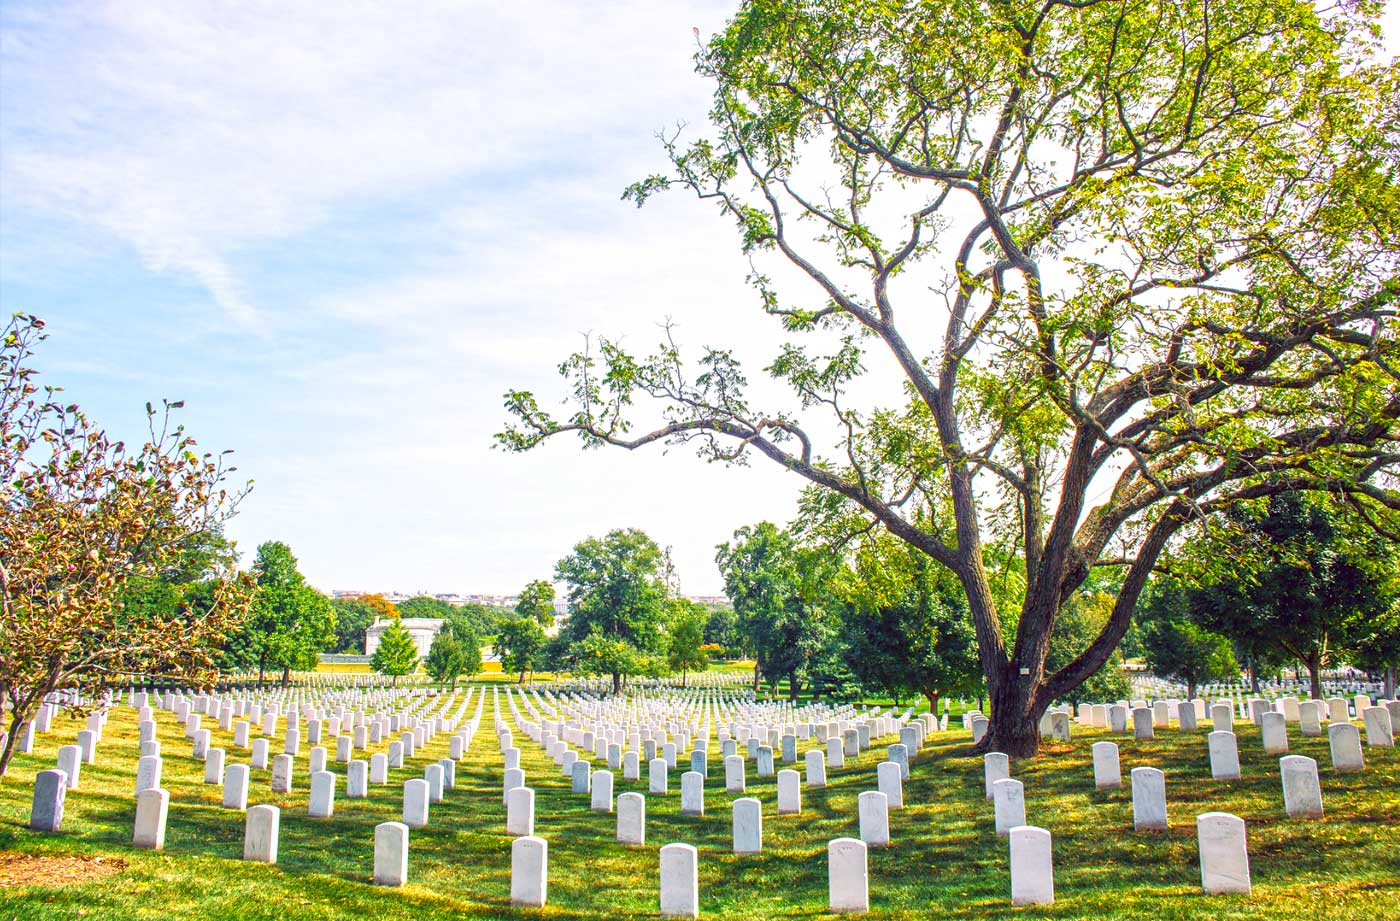 Arlington National Cemetery